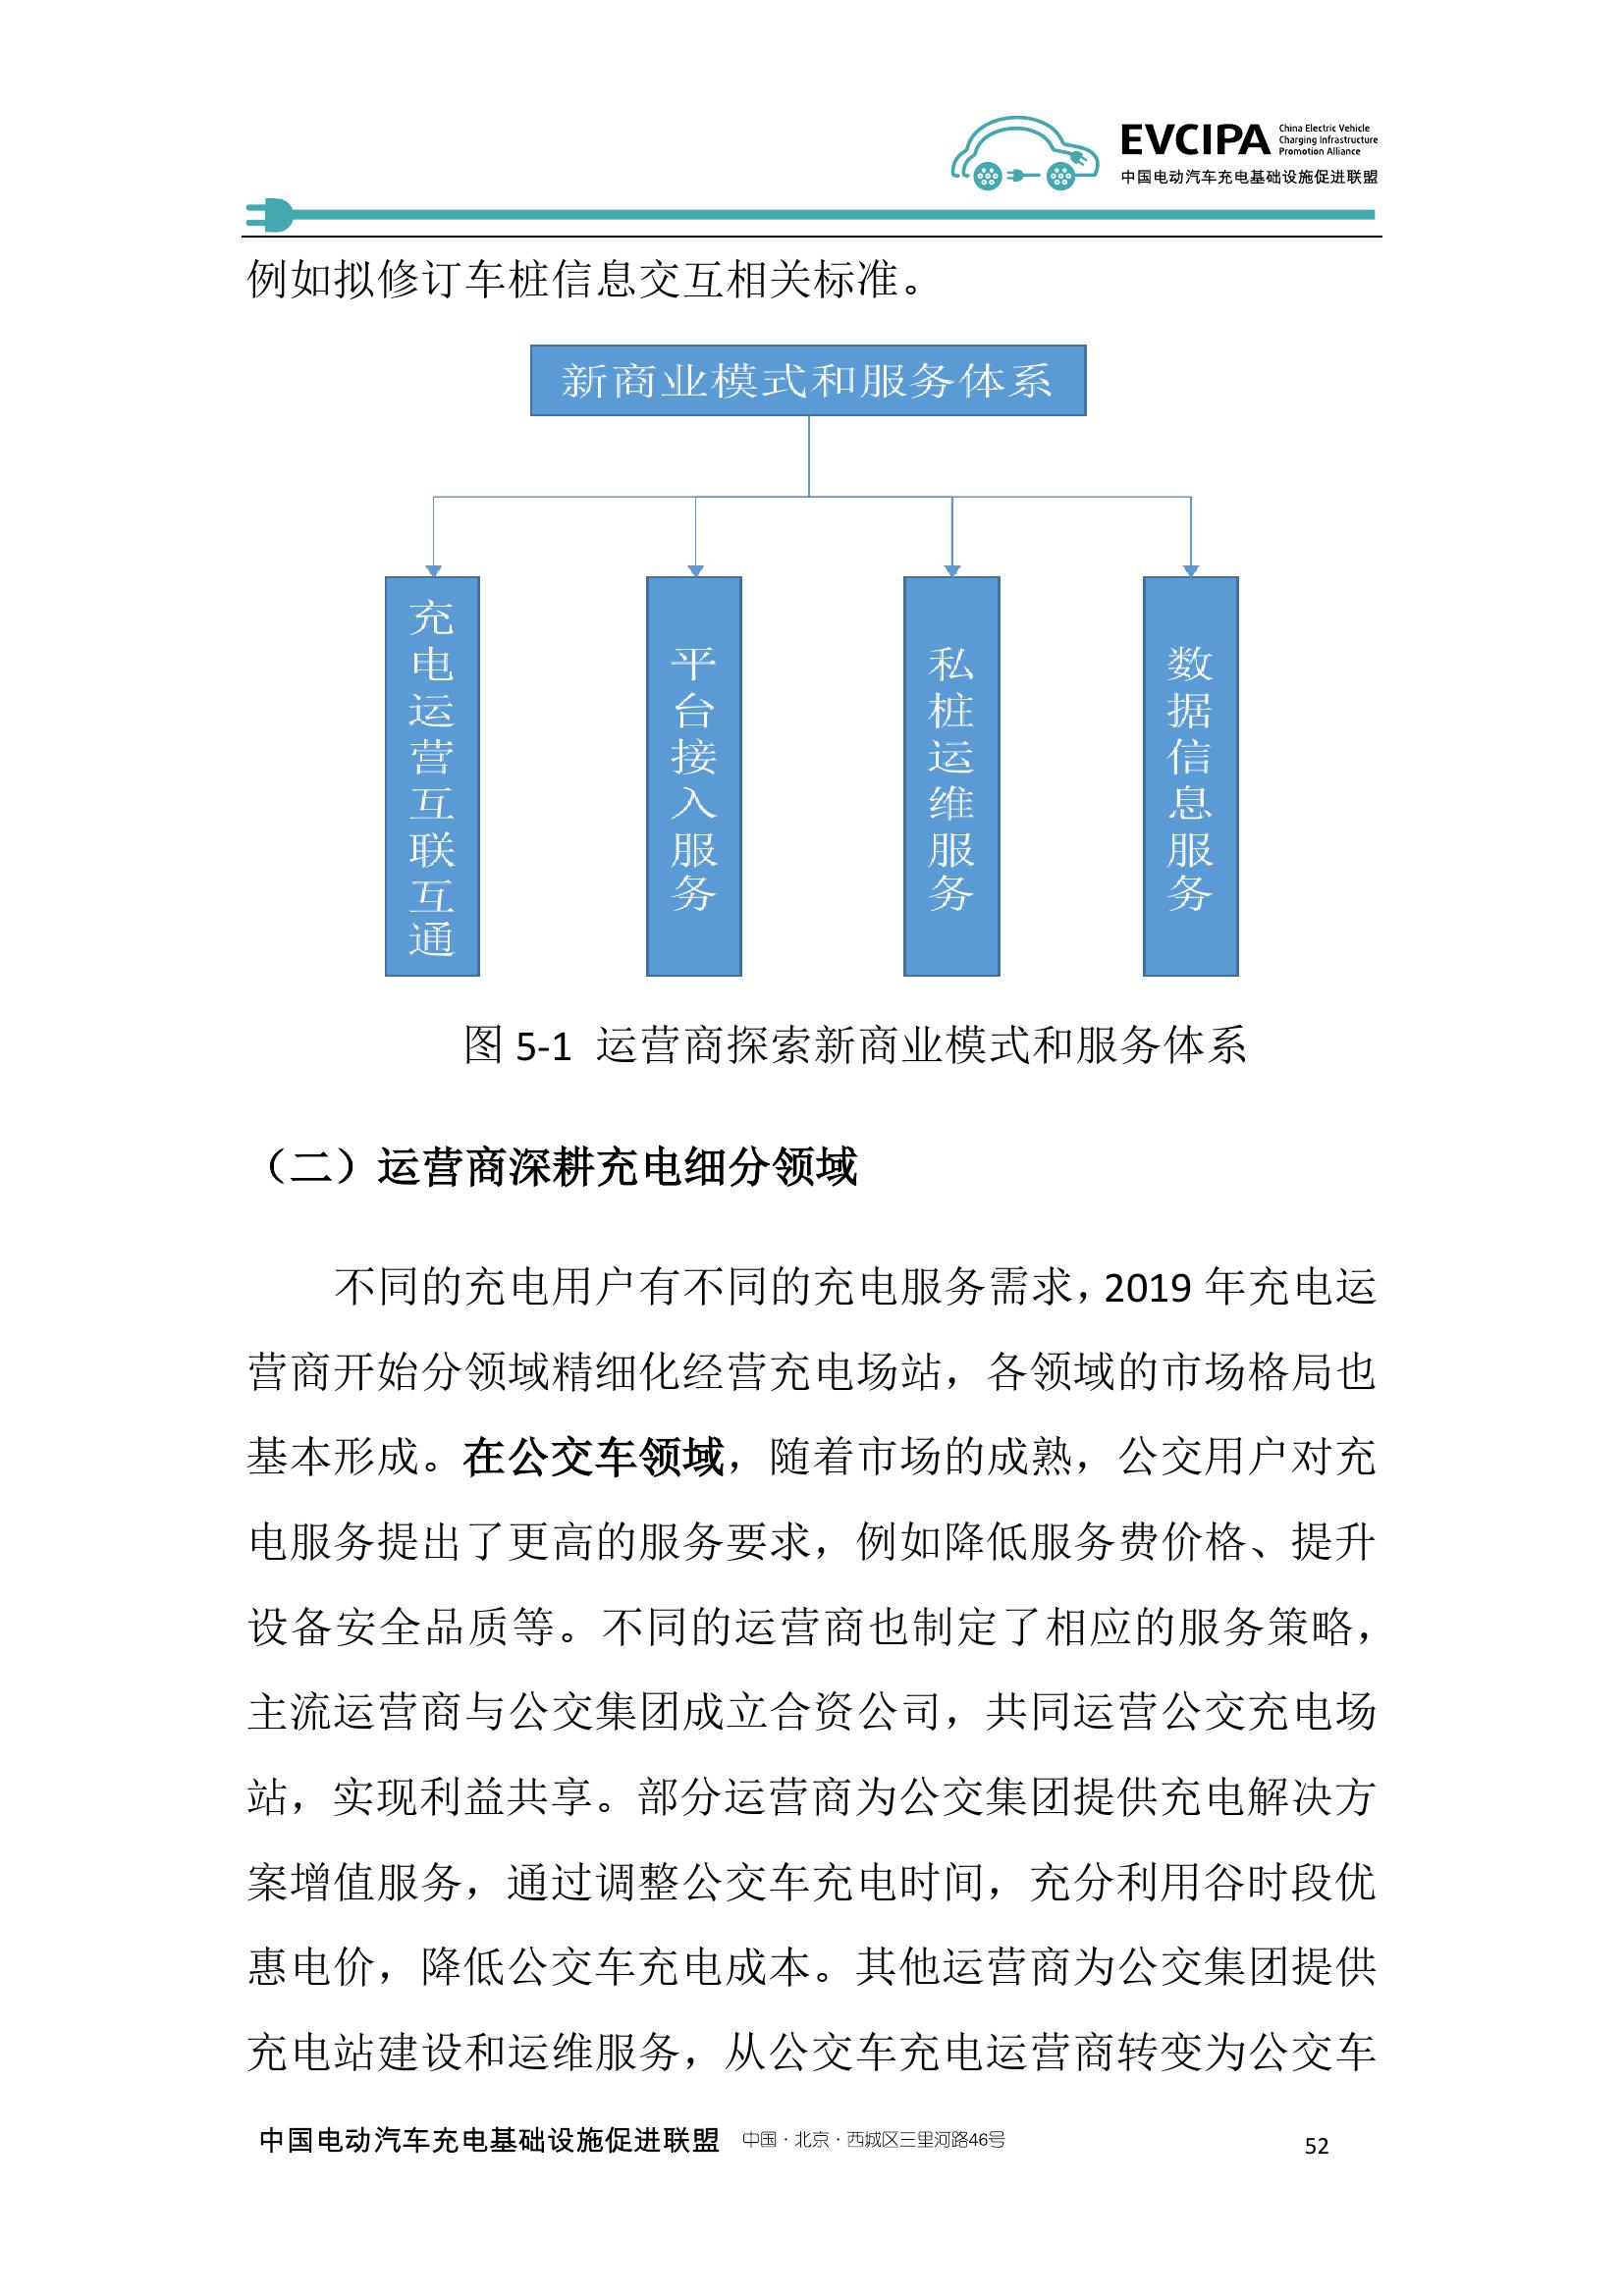 2019-2020年度中国充电基础设施发展报告_000060.jpg